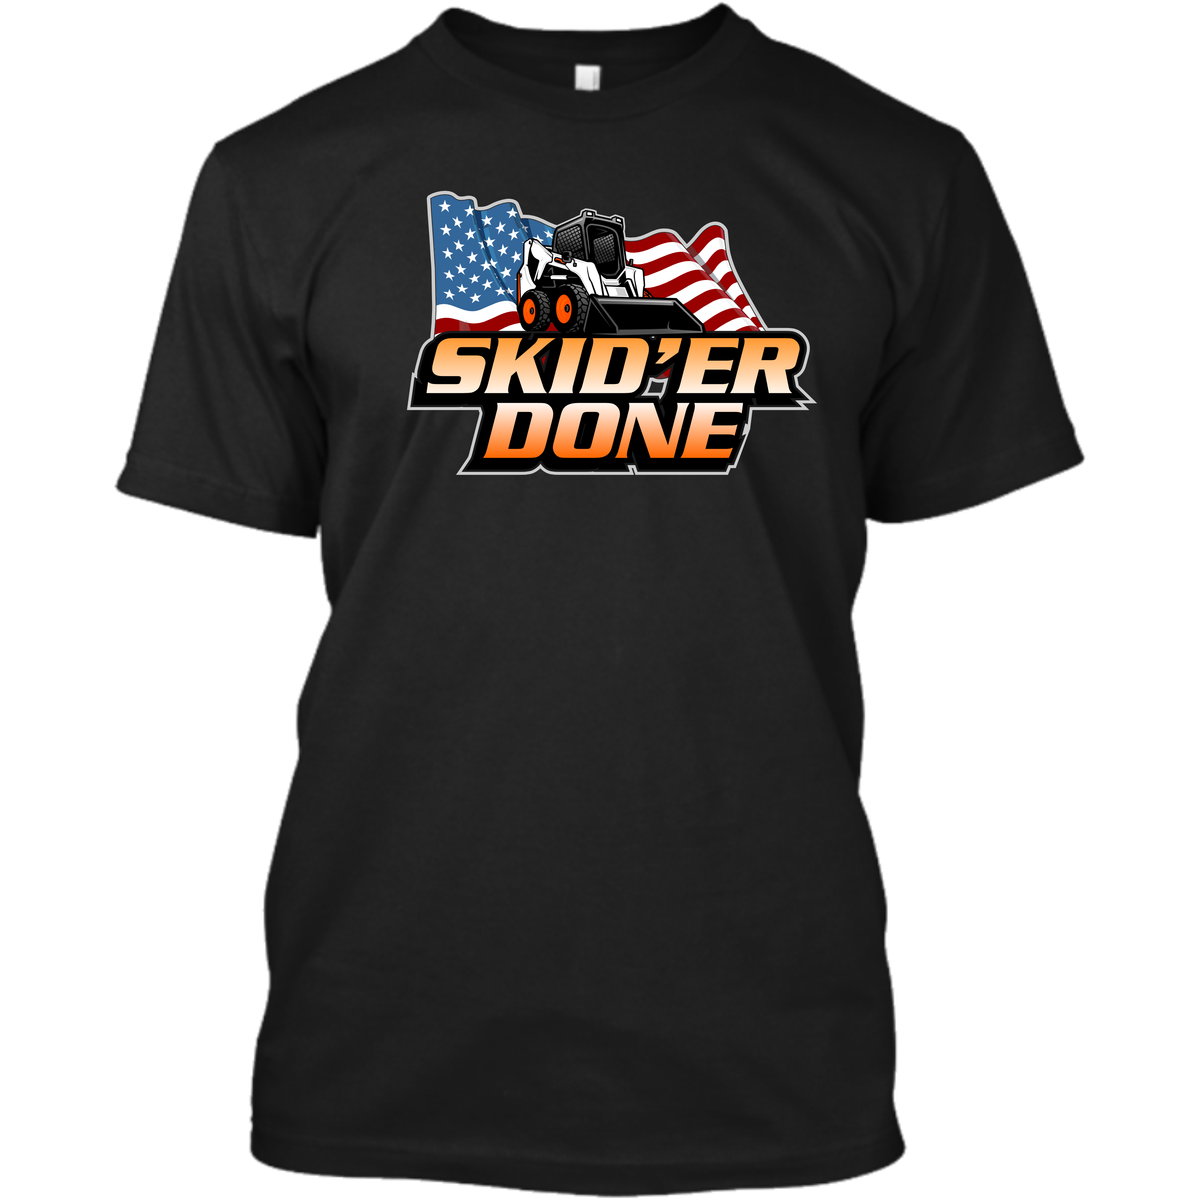 Skid'er Done - American Flag - Orange and White - Skid Steer